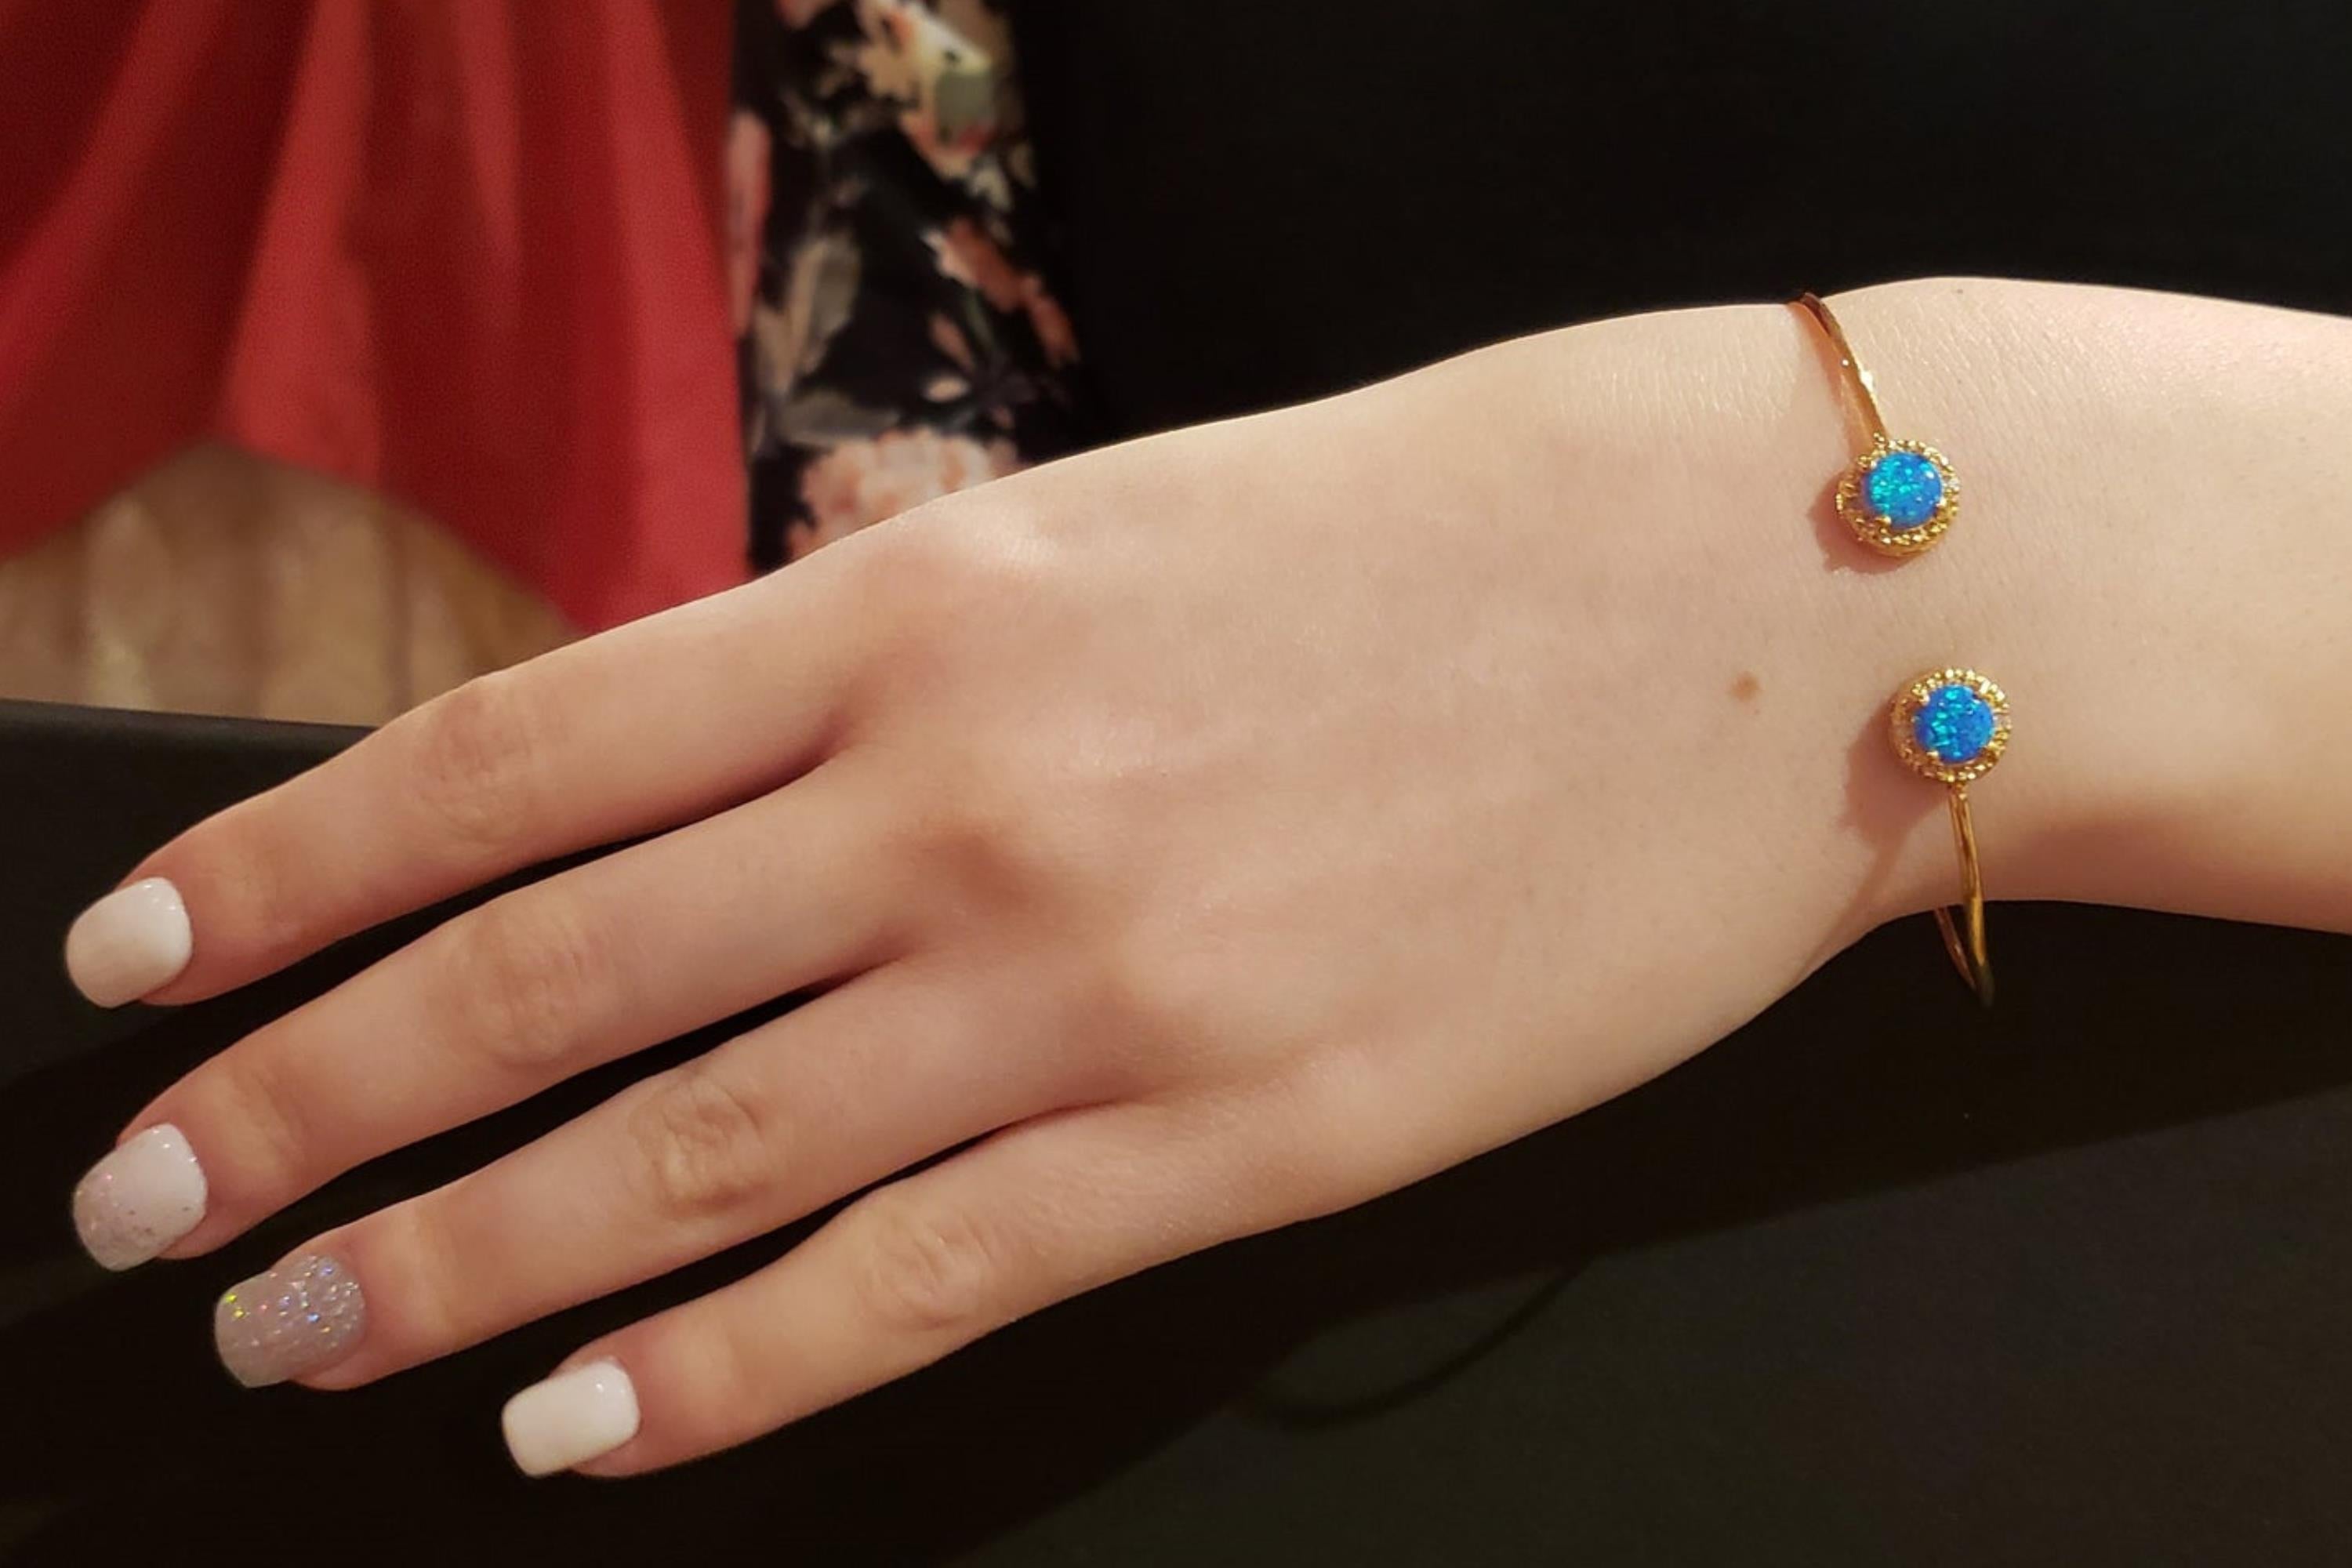 14Kt Gold Blue Opal & Diamond Round Bangle Bracelet